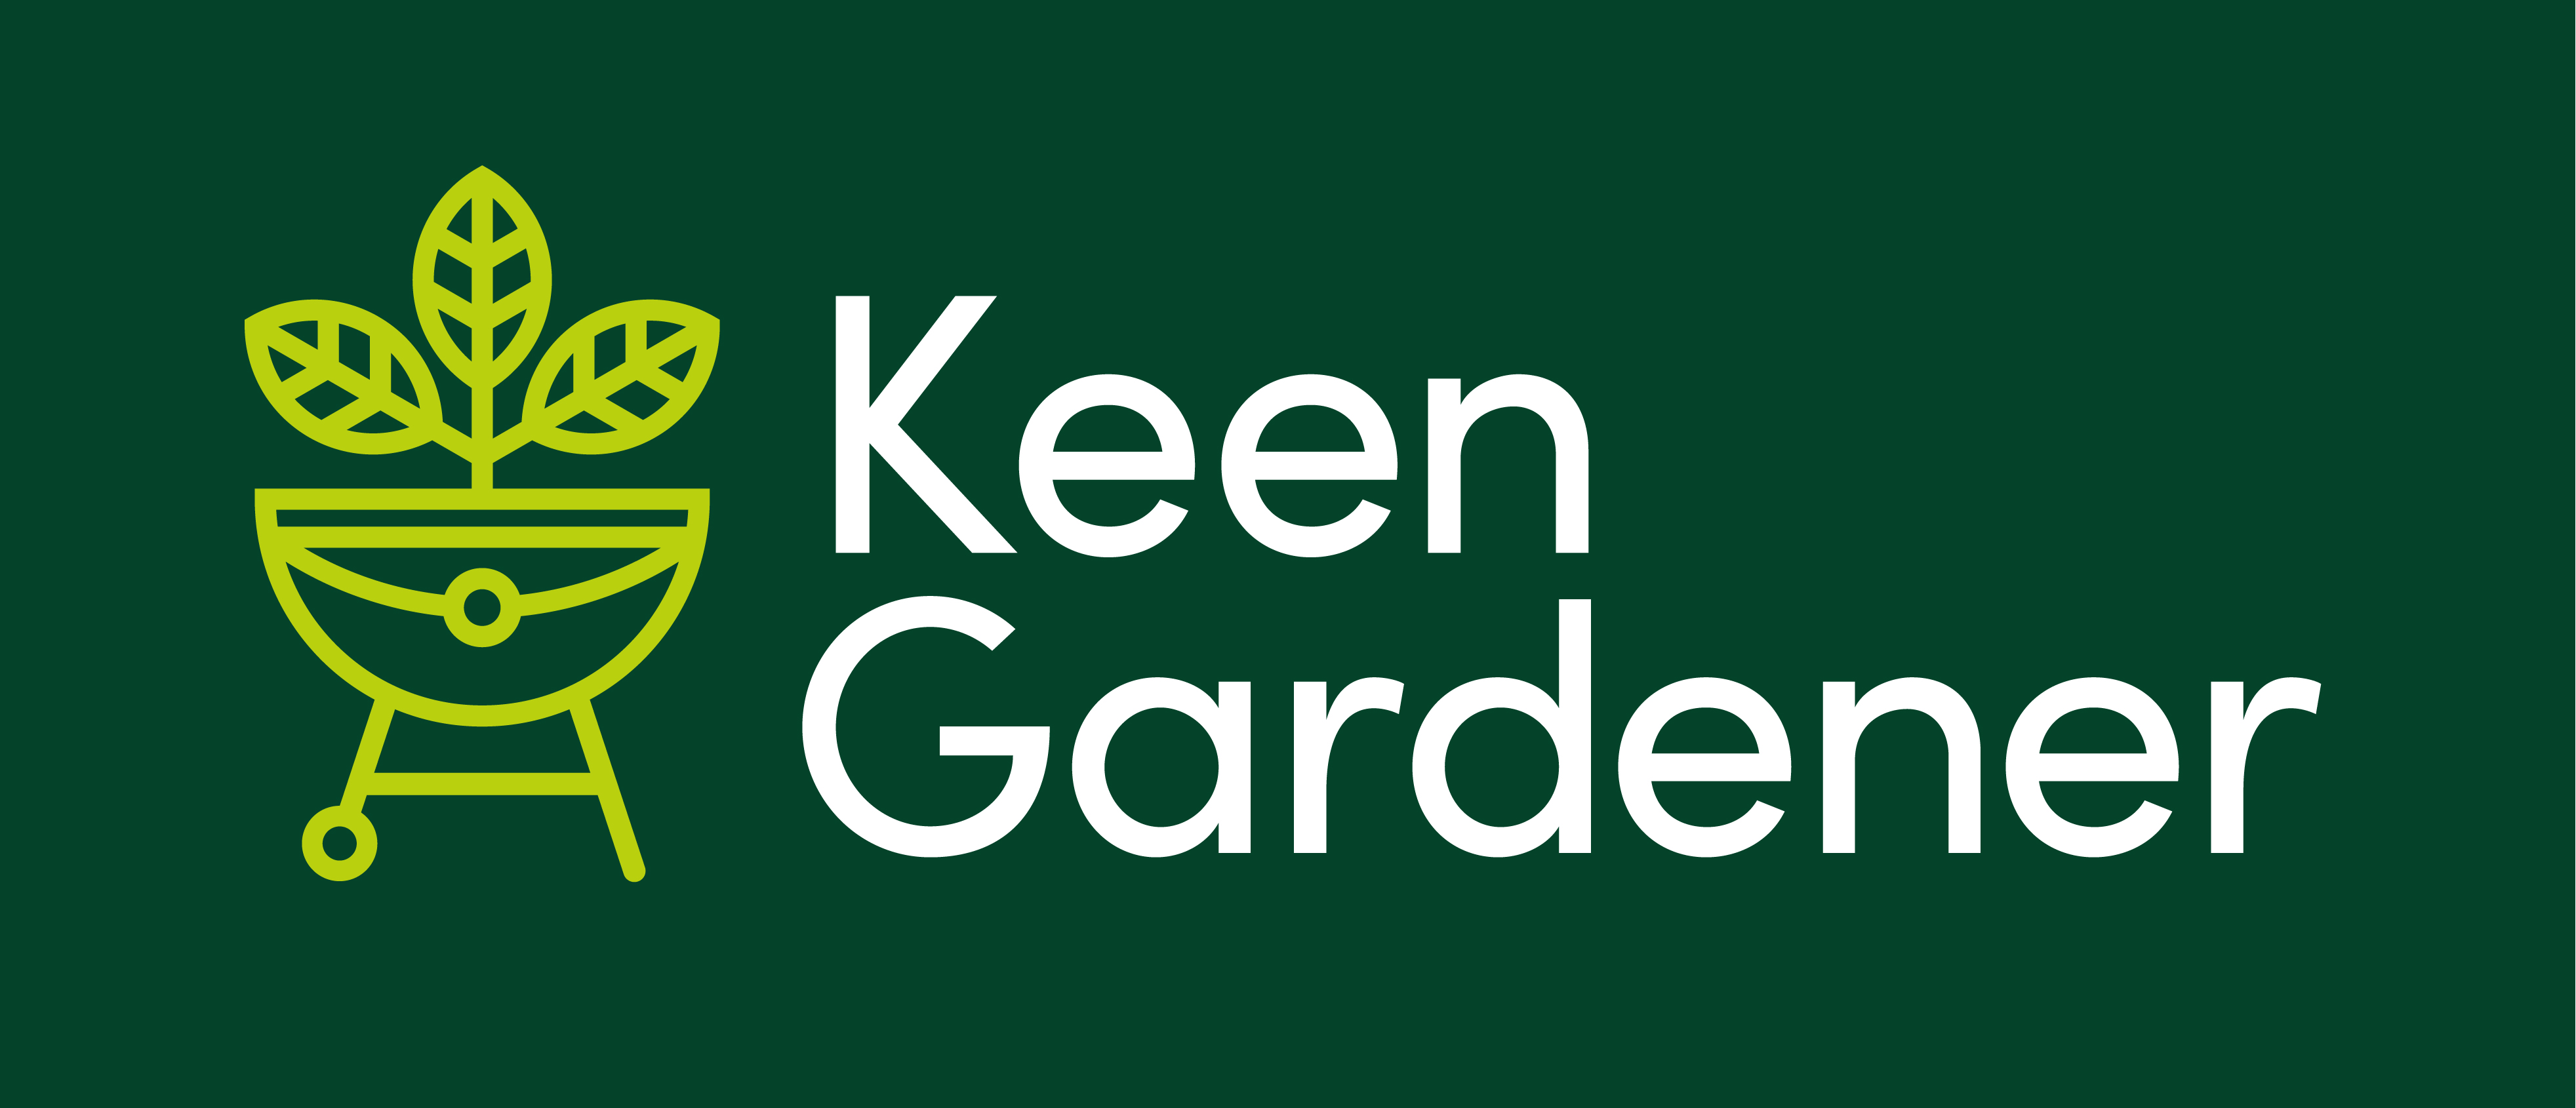 We Take AMEX - Keen Gardener Online Garden Retailer of Barbecues, Garden Furniture & Garden Equipment